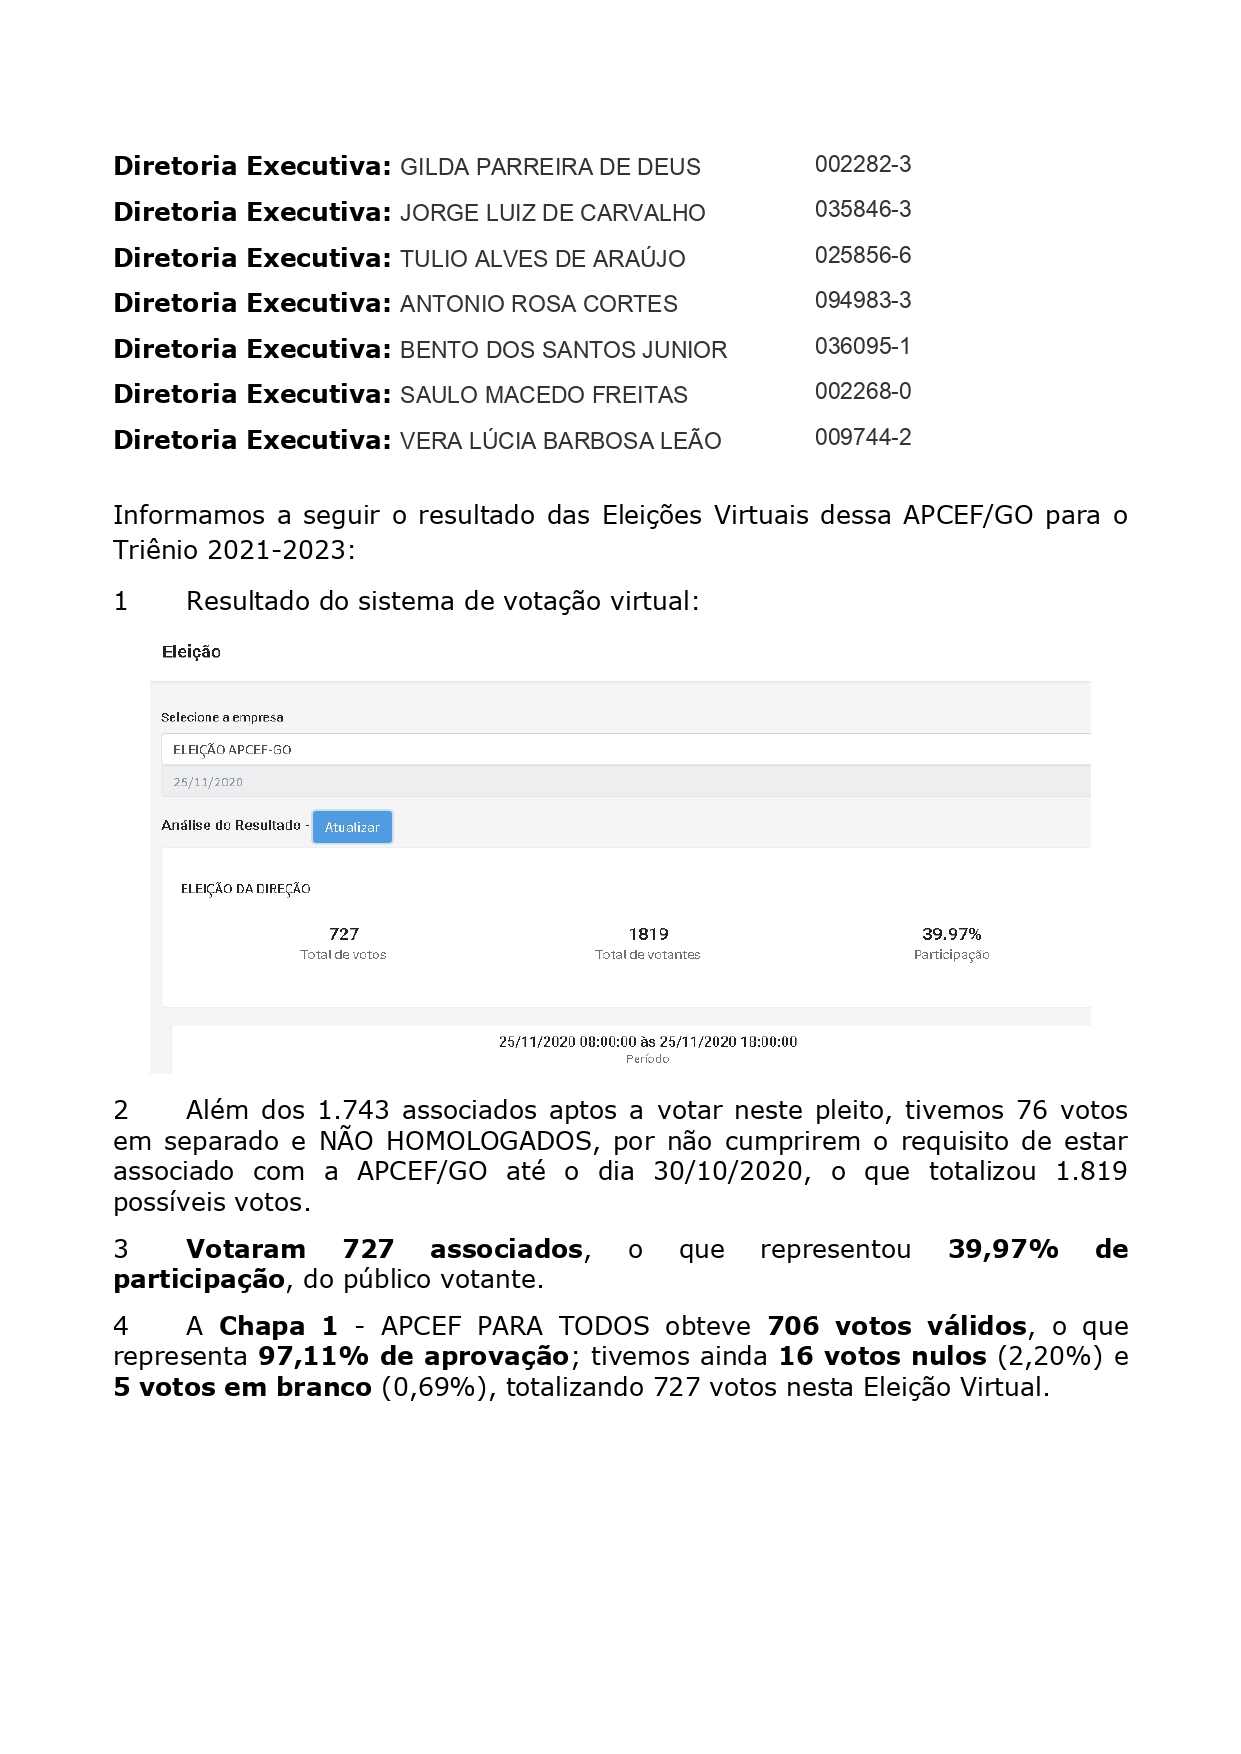 Resultado Final Eleicoes 2020 - Diretoria Executiva APCEFGO_page-0002.jpg